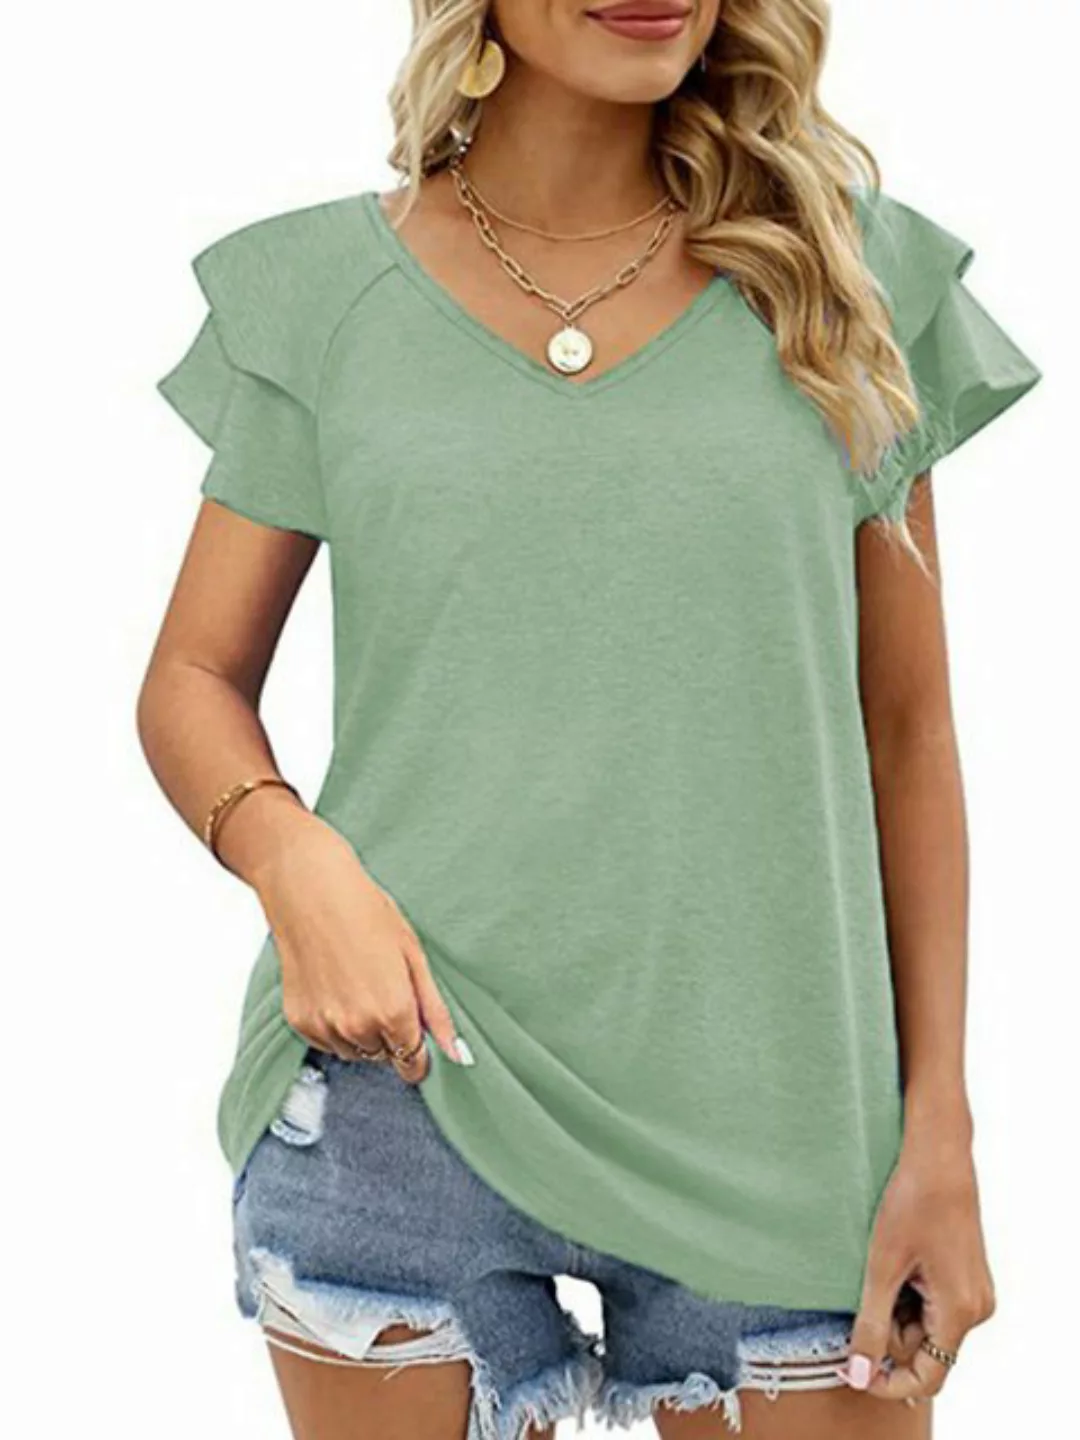 JDMGZSR T-Shirt Lässige, lockere, bequeme und atmungsaktive Damenoberteile günstig online kaufen